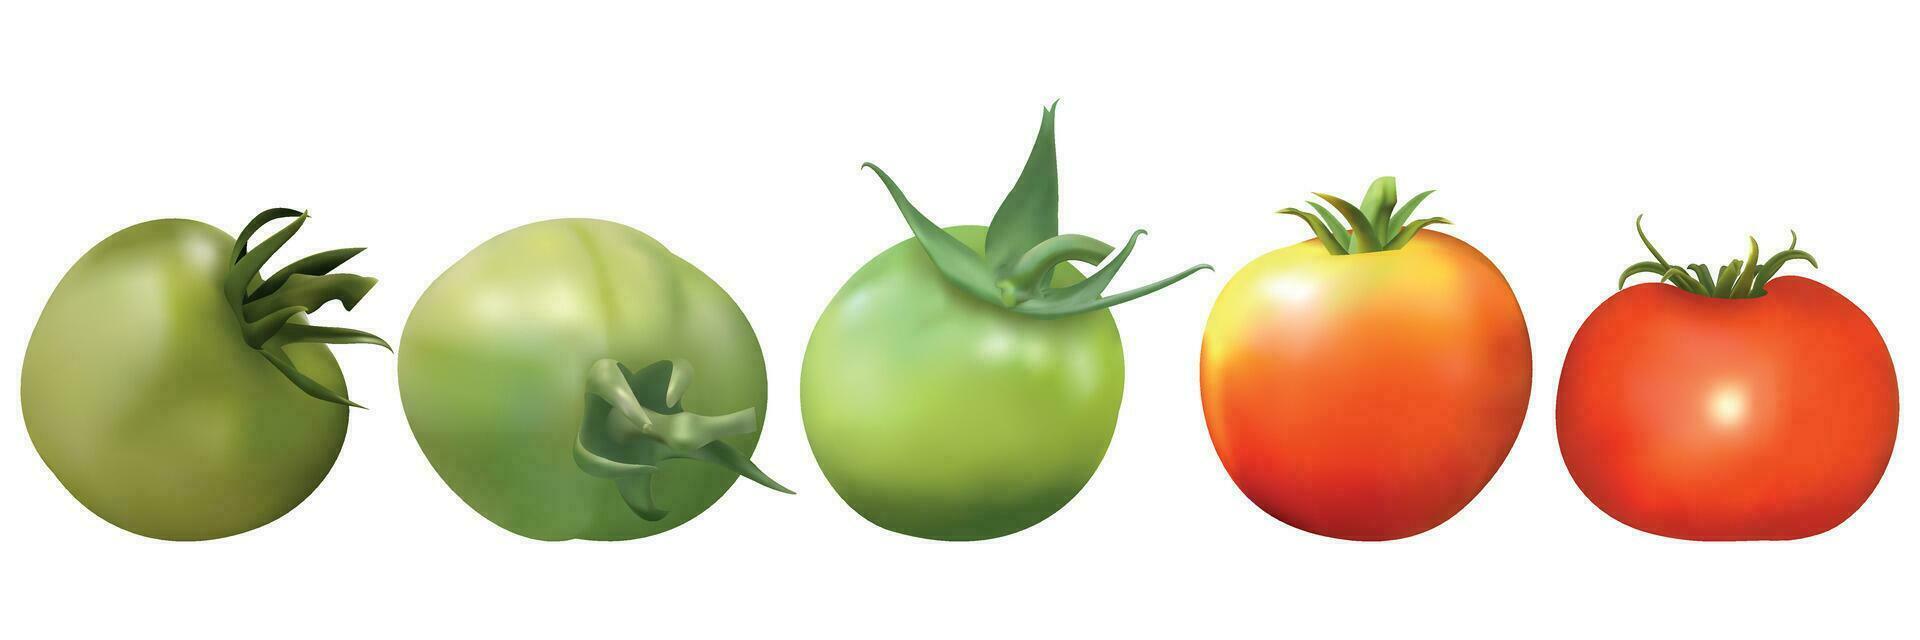 isolerat uppsättning av grön, orange, röd tomat frukt på en vit bakgrund vektor